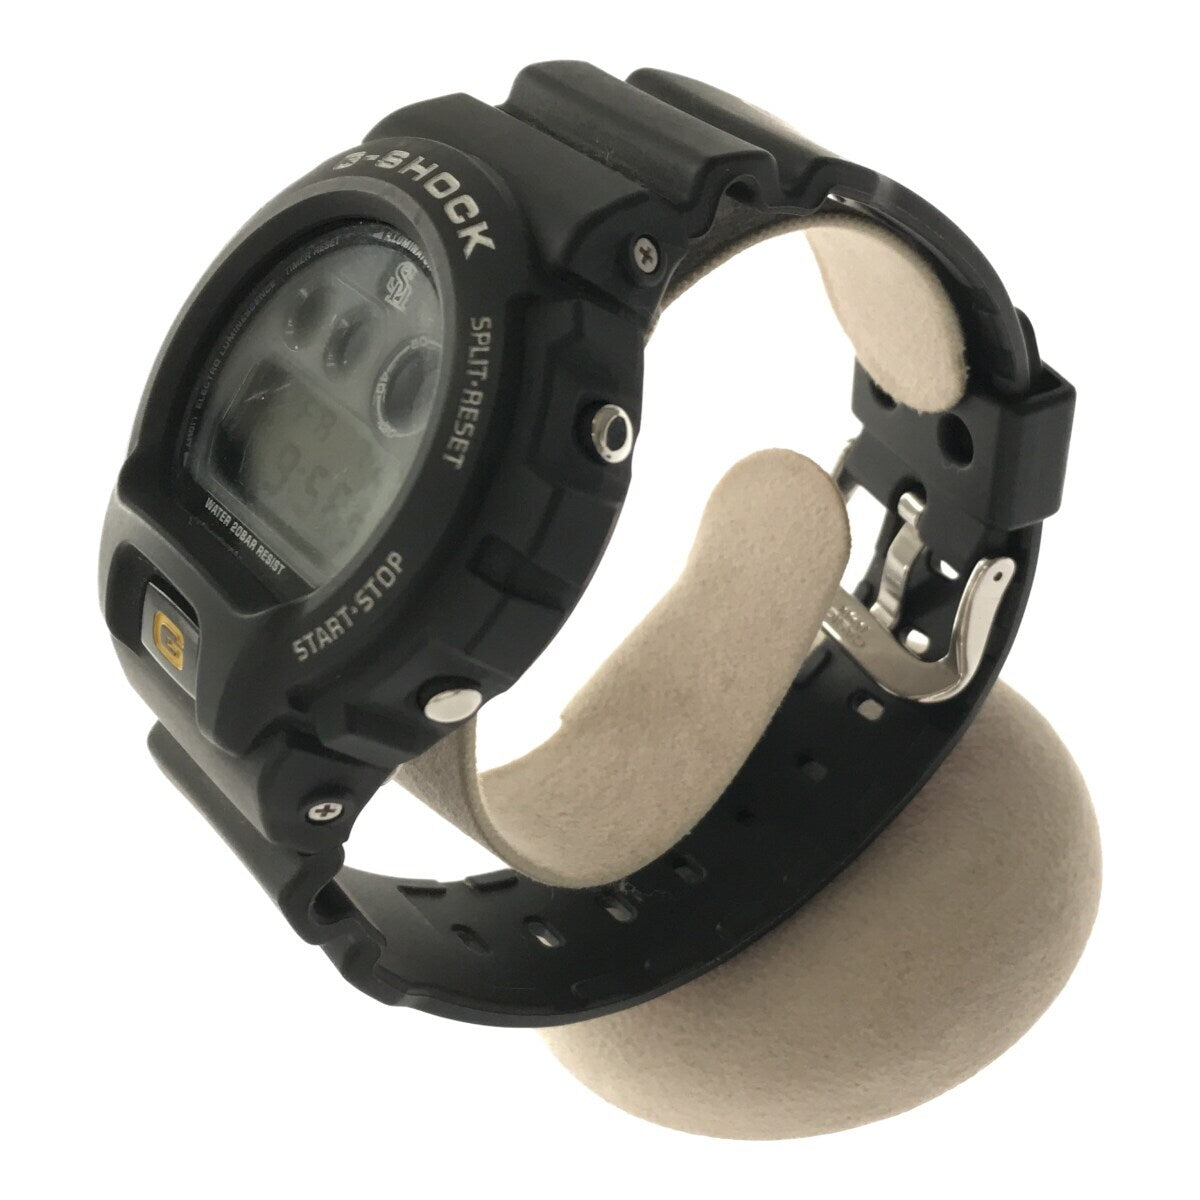 正規品HOTG-SHOCK ジーショック DW-6900FS SoftBank HAWKS コラボ 川崎宗則 1000本安打記念 腕時計 デジタル 3つ目 NPB プロ野球 GB コラボレーションモデル